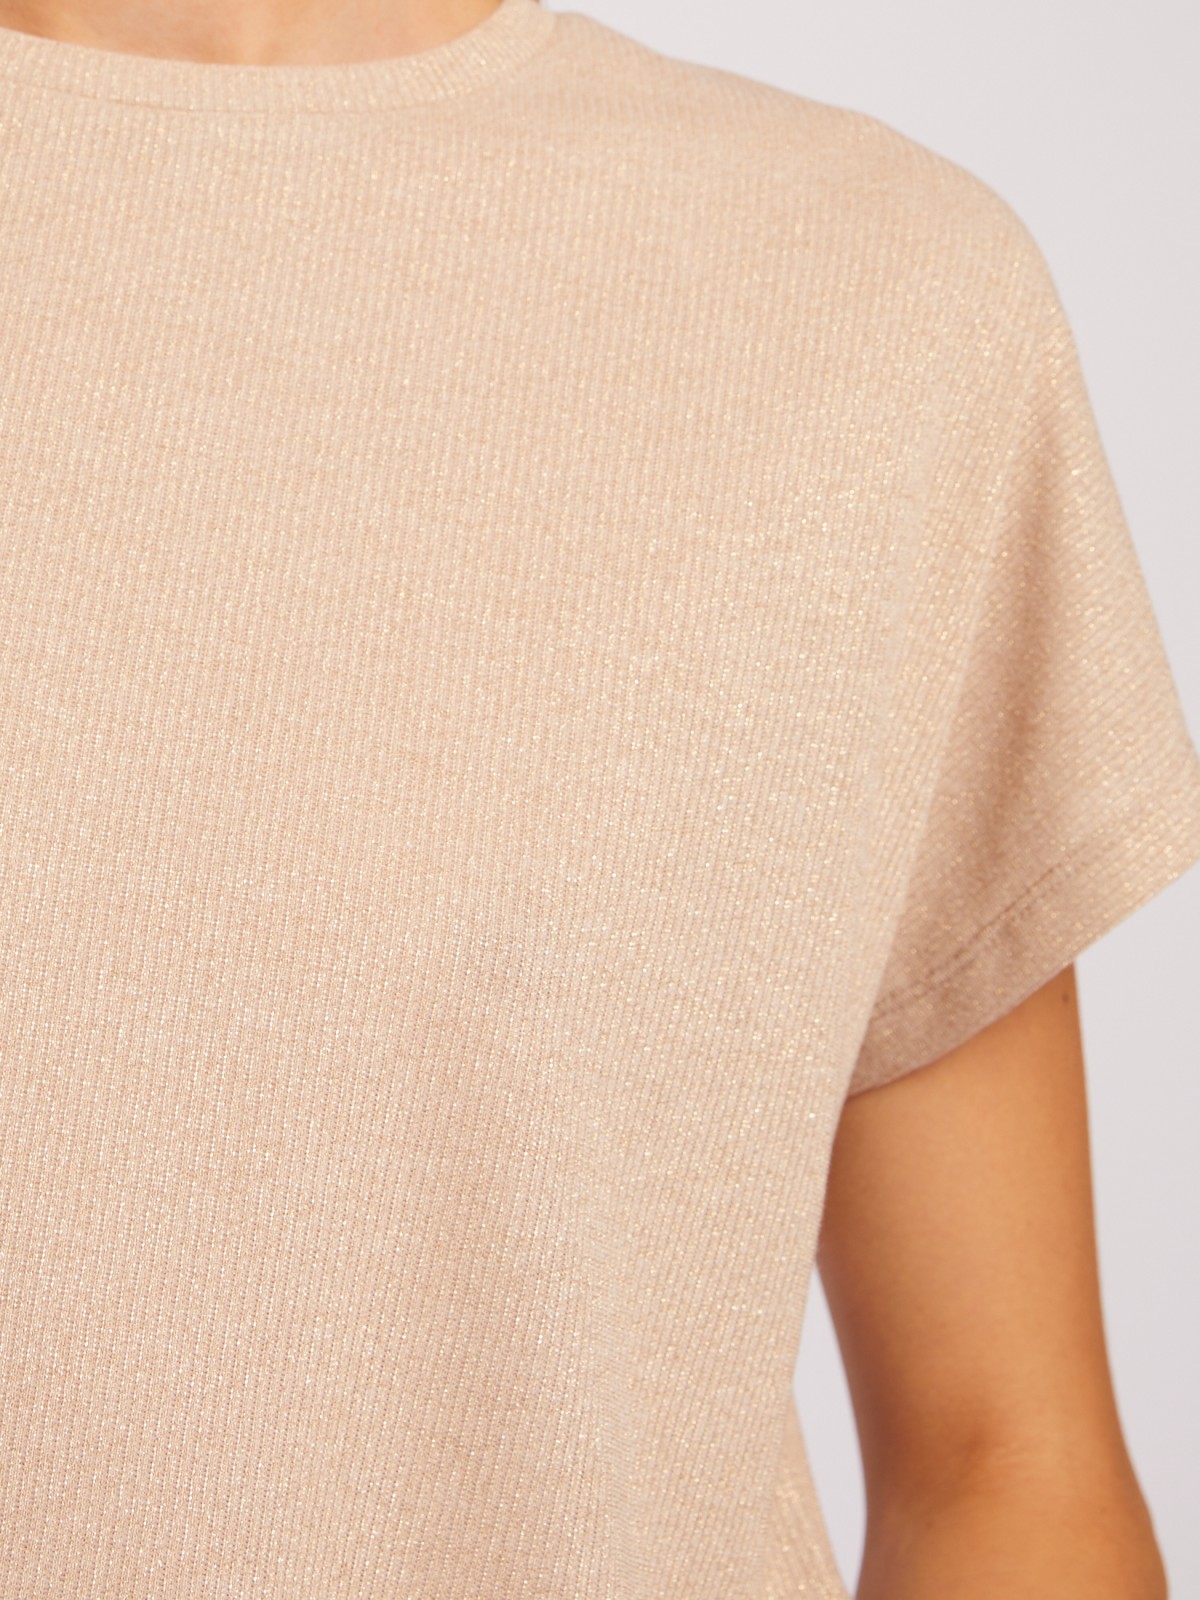 Трикотажный топ-блузка с люрексом zolla 024213226723, цвет молоко, размер S - фото 4